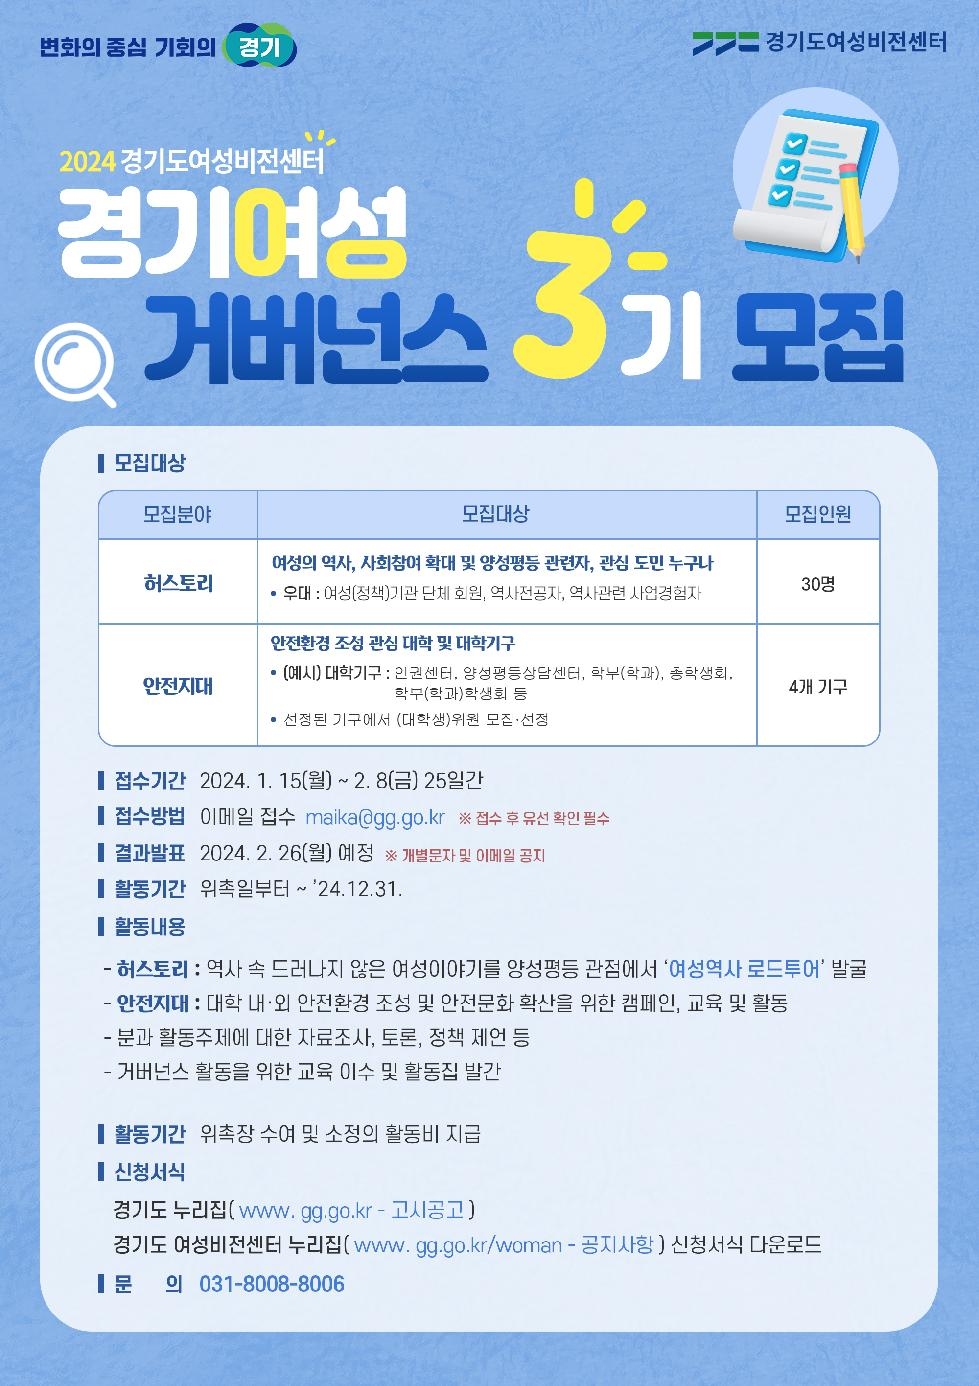 경기도, 2월 8일까지 ‘3기 경기여성거버넌스’ 위원 모집